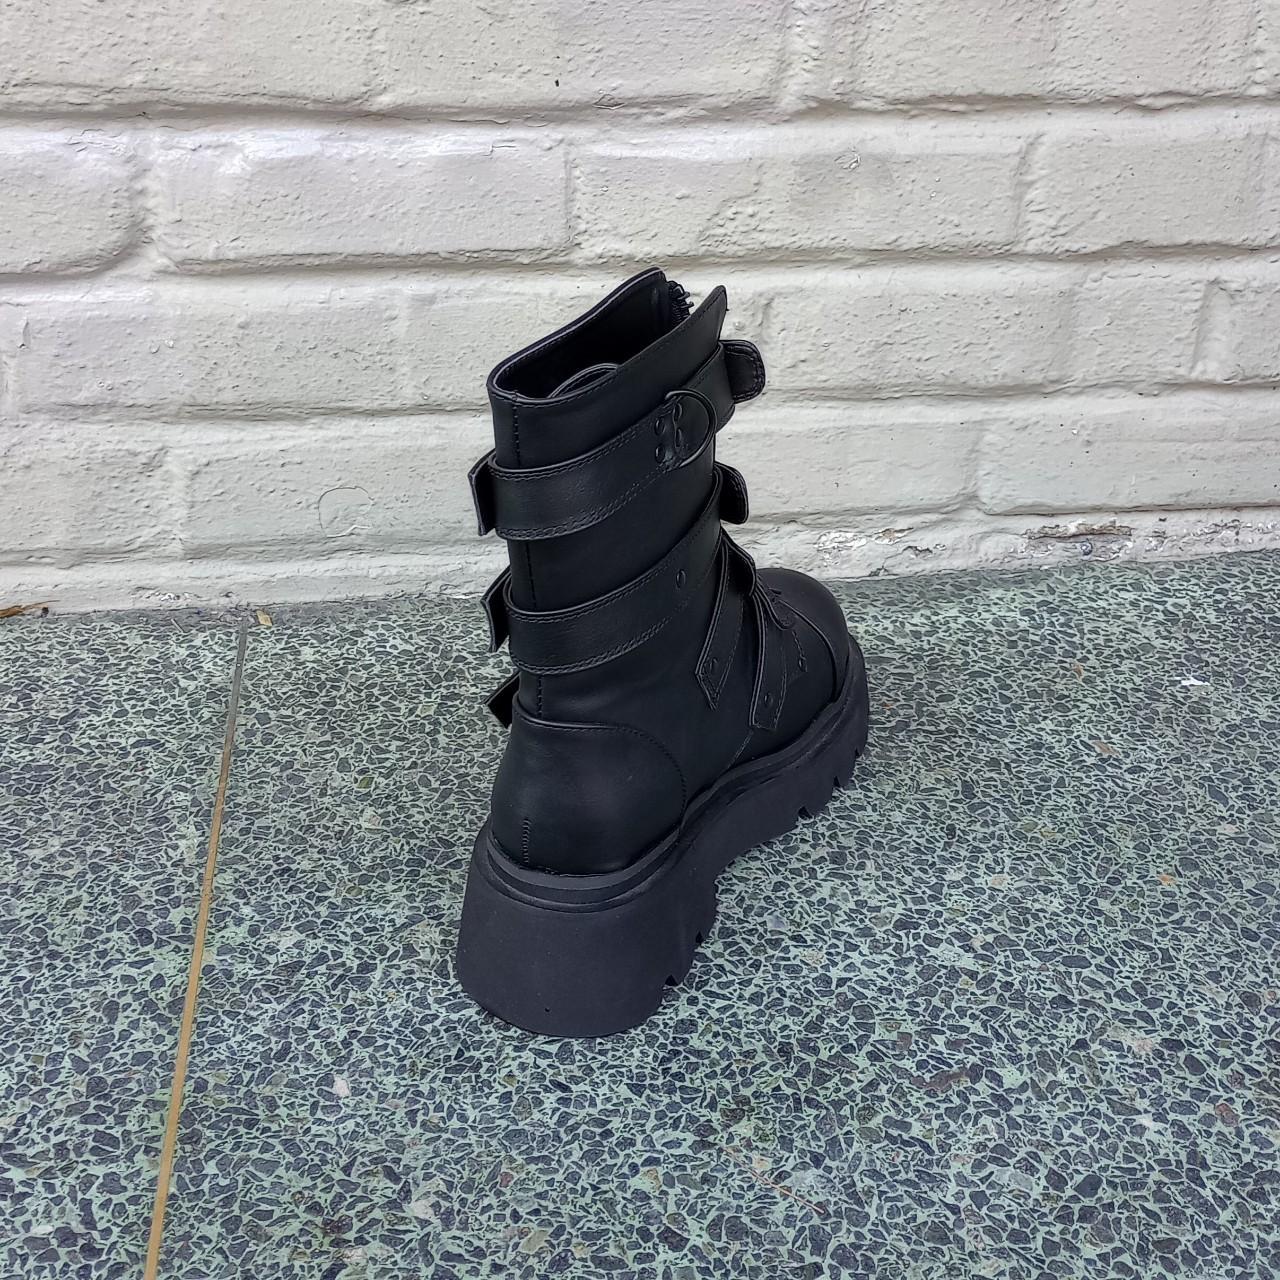 The Demonia Renegade-55 calf-high boot in black has... - Depop